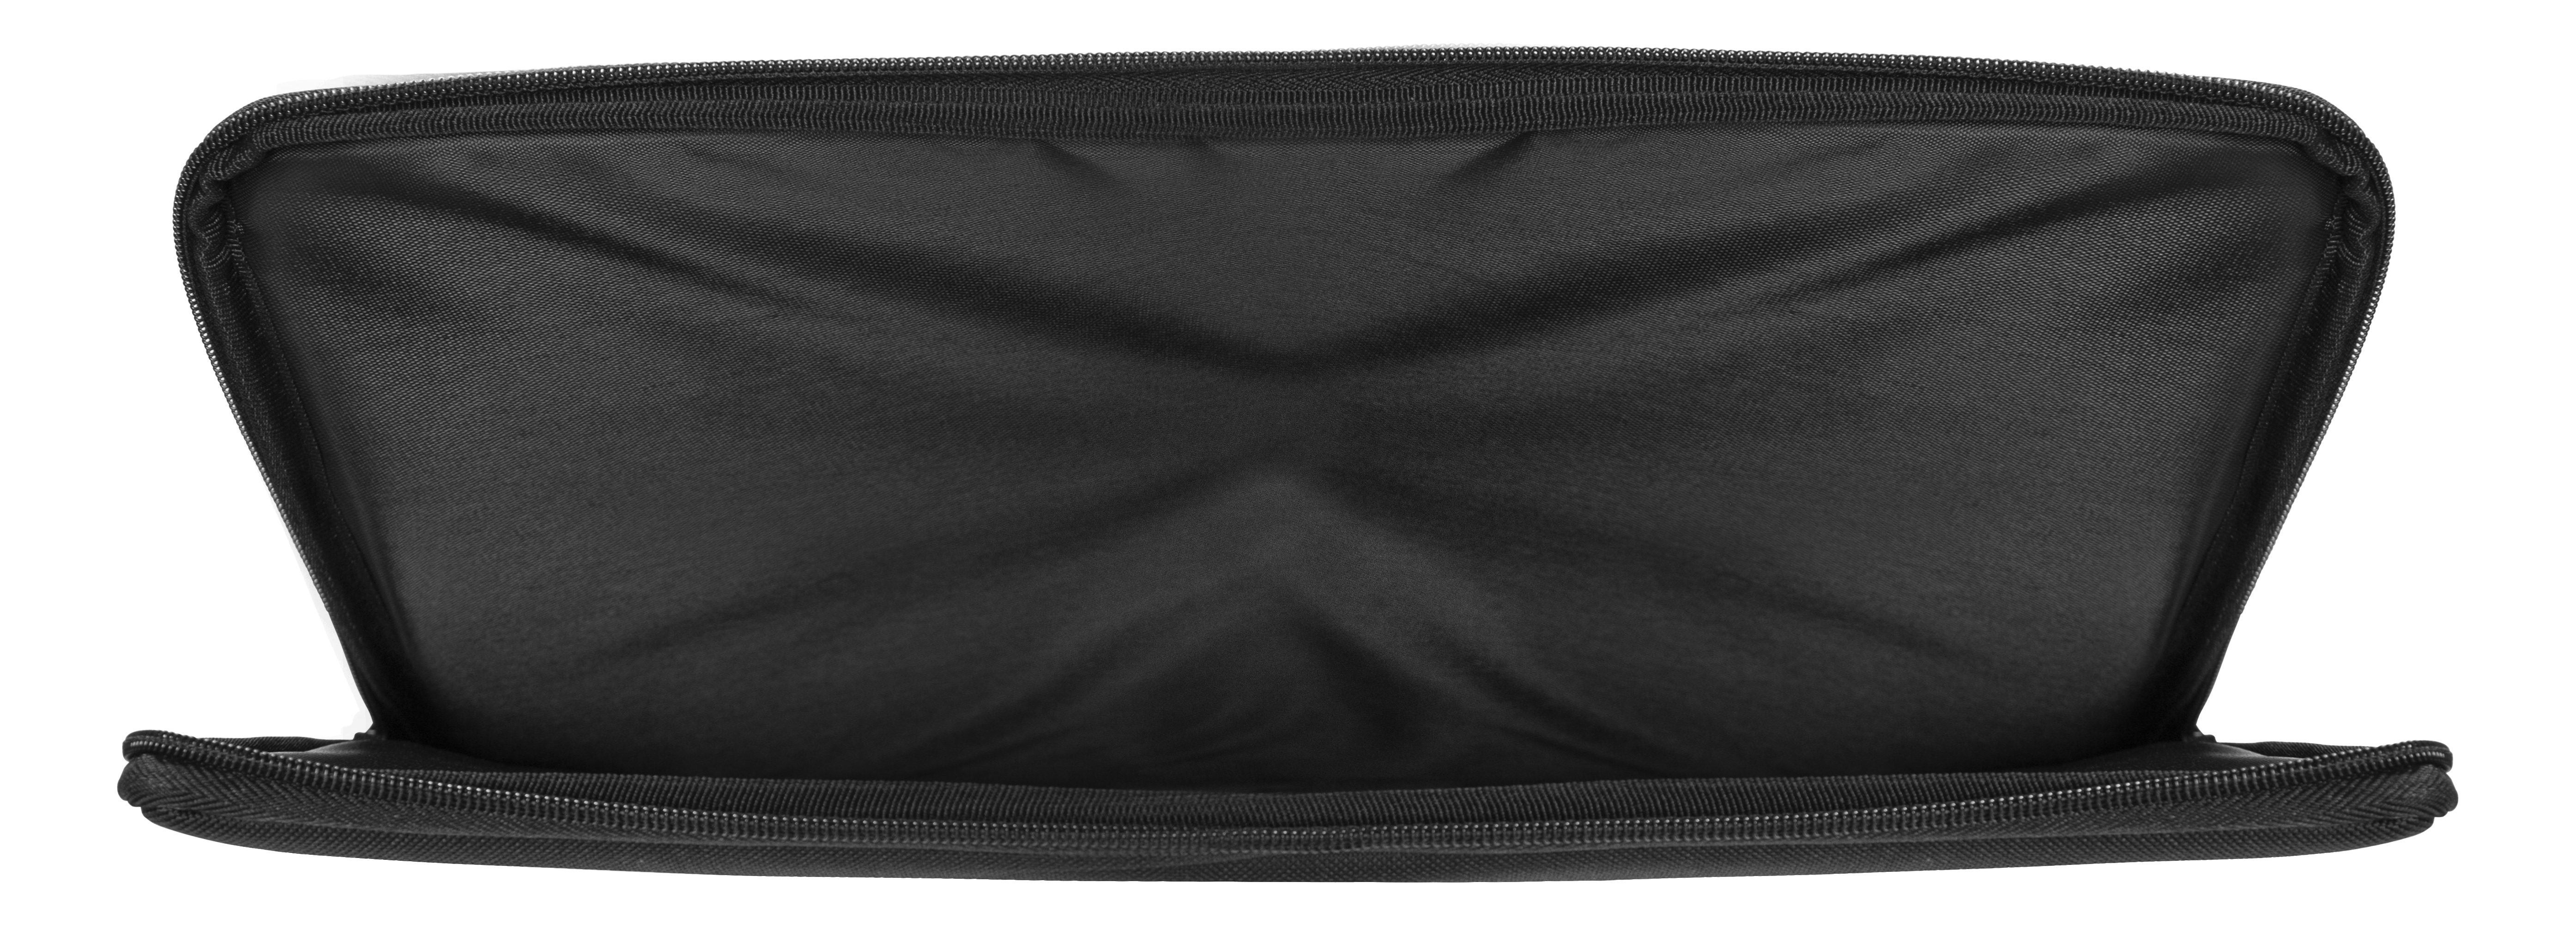 NV-902 für Notebooktasche Universal DELTACO Schwarz Sleeve Materialien, Verschiedene